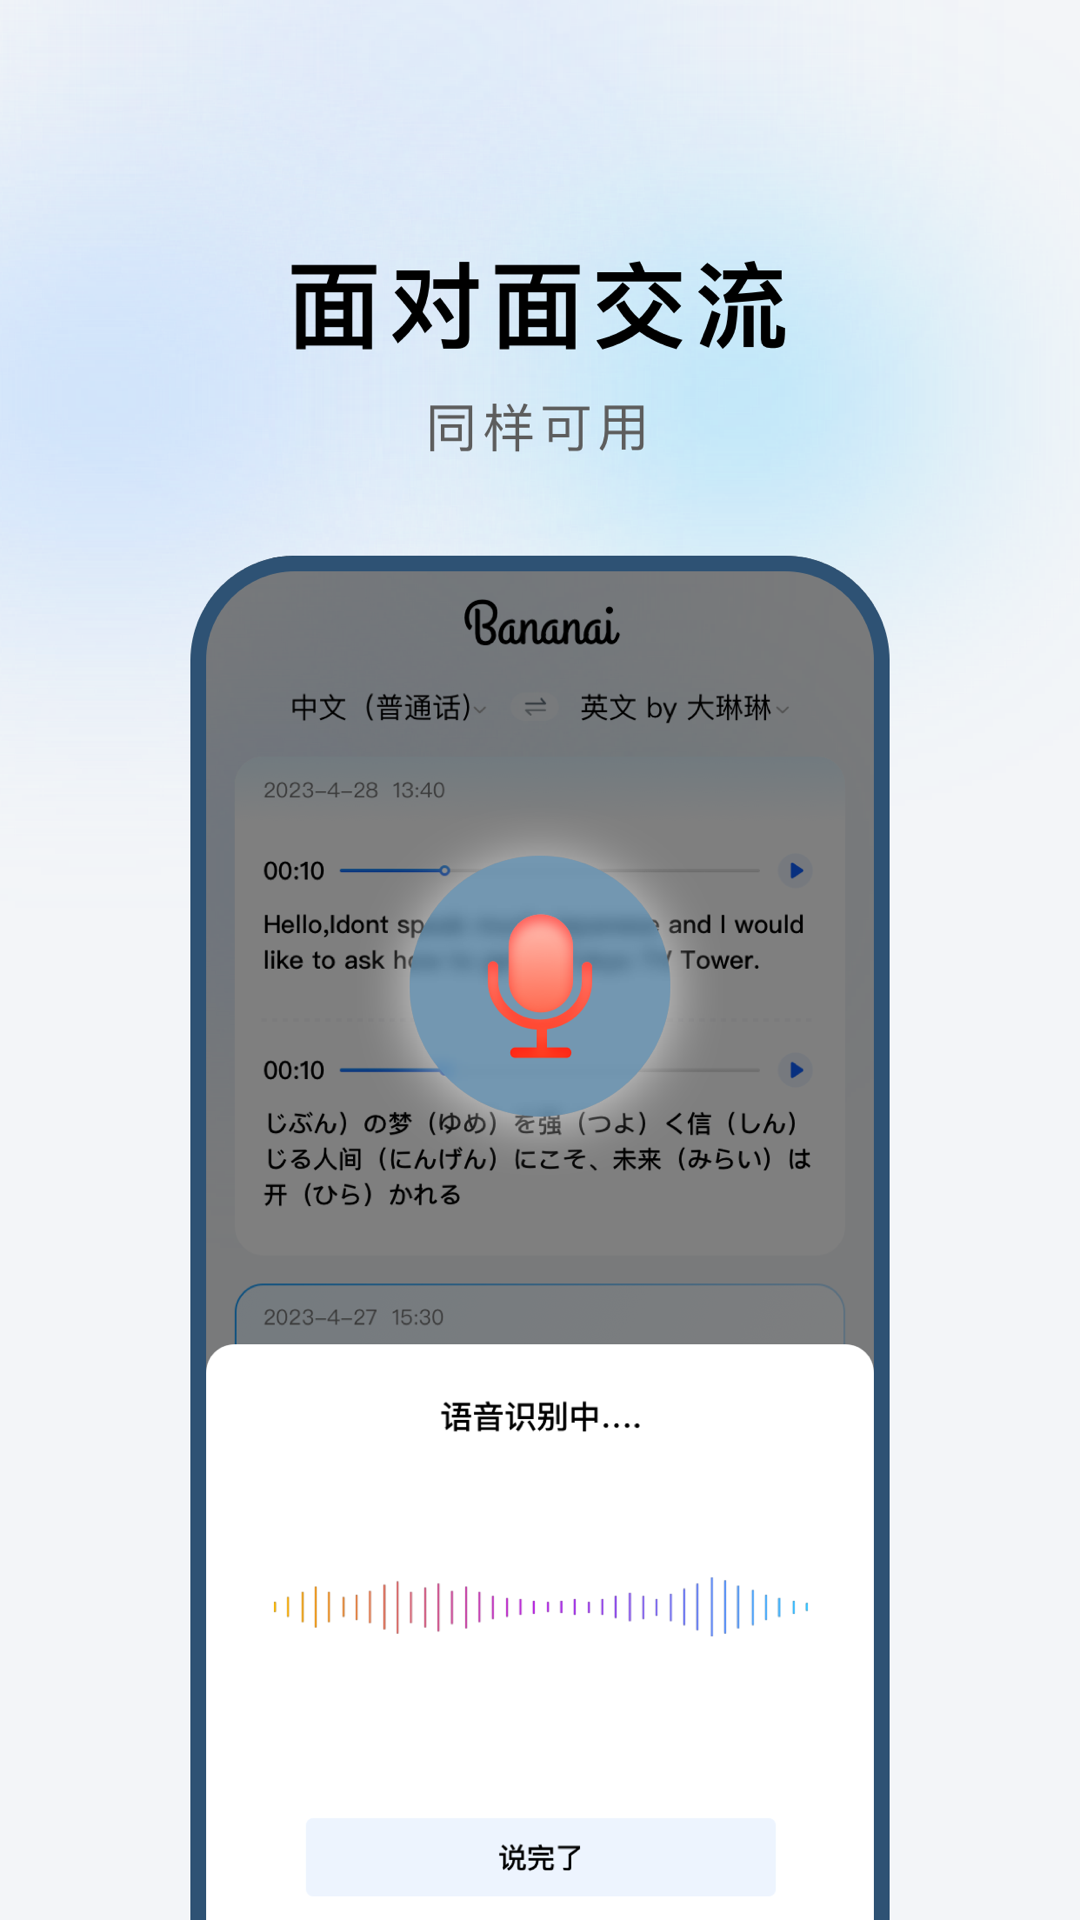 布拿拿聊天翻译app官方版截图2: